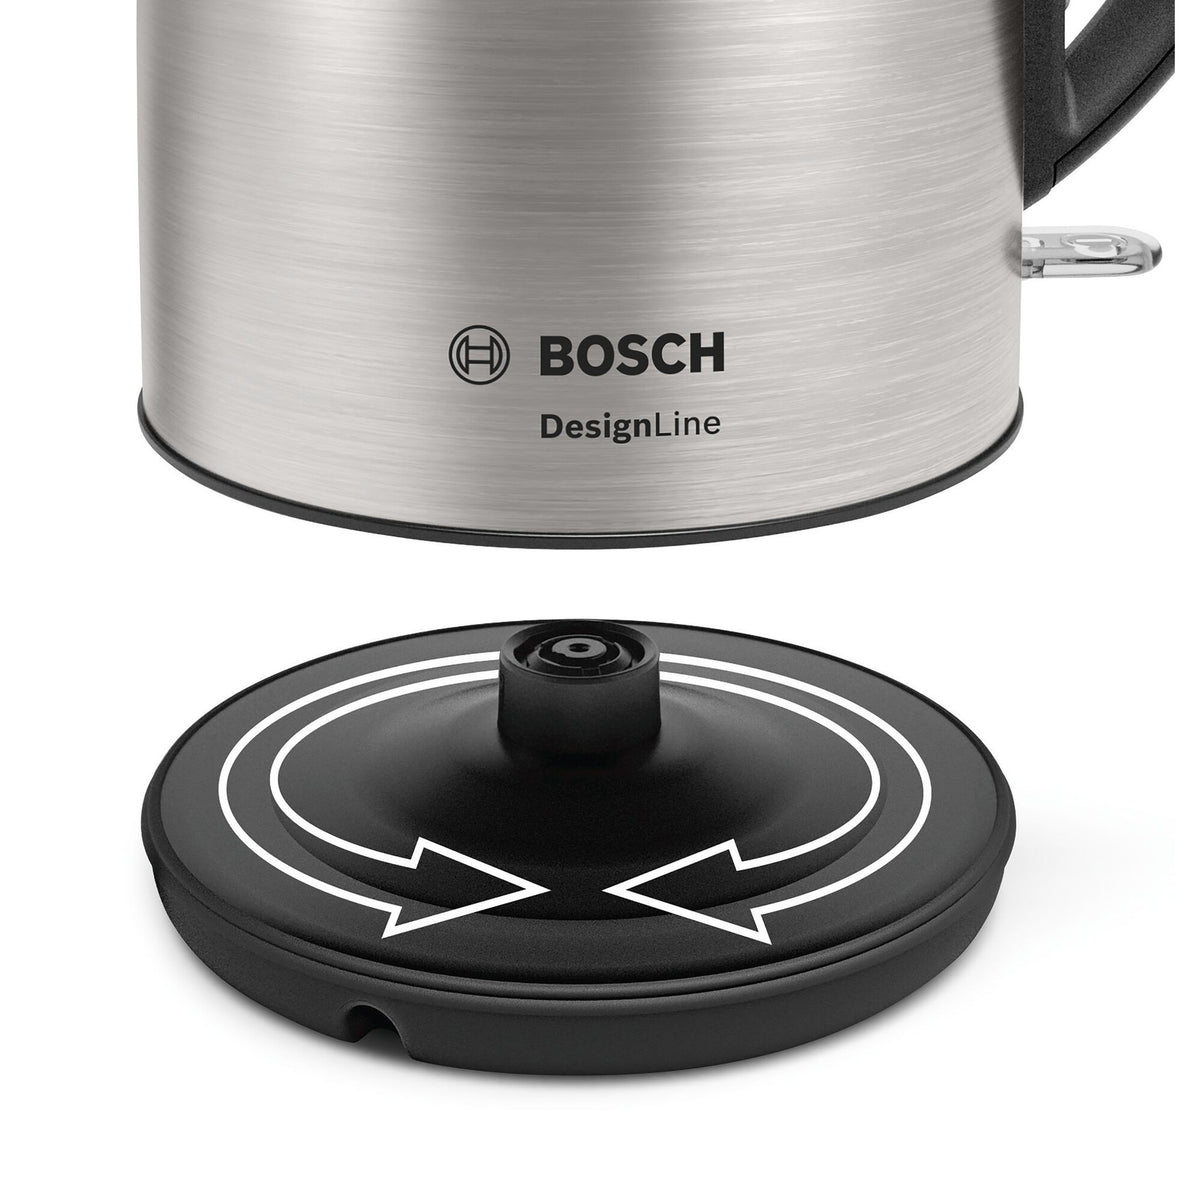 Rychlovarná konvice Bosch TWK3P420, nerez, 1,7l